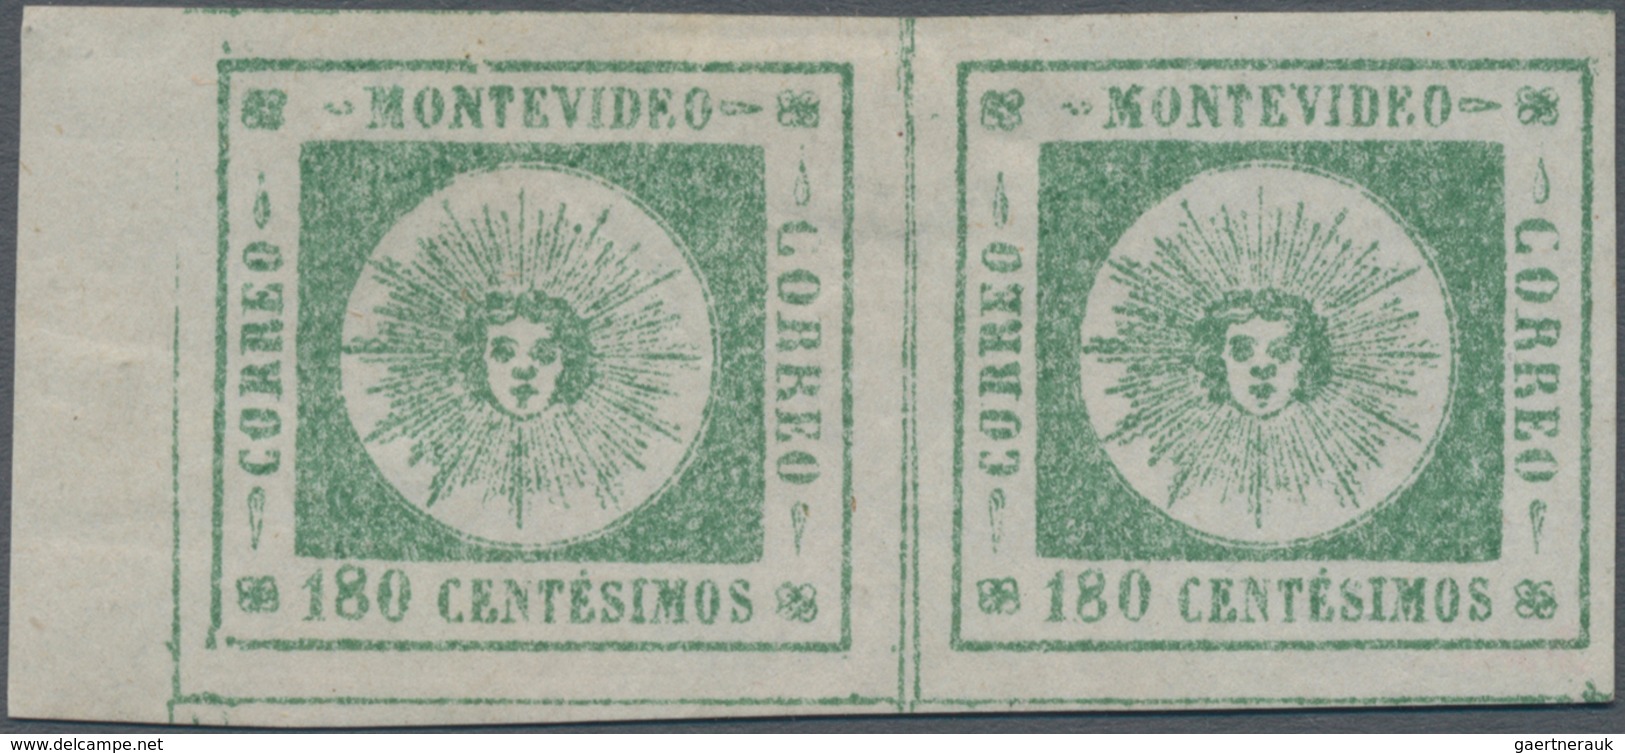 Uruguay: 1859, Sol De Mayo 180 Centesimos Green, * Pair From Left Margin, Large To Huge Margins All - Uruguay